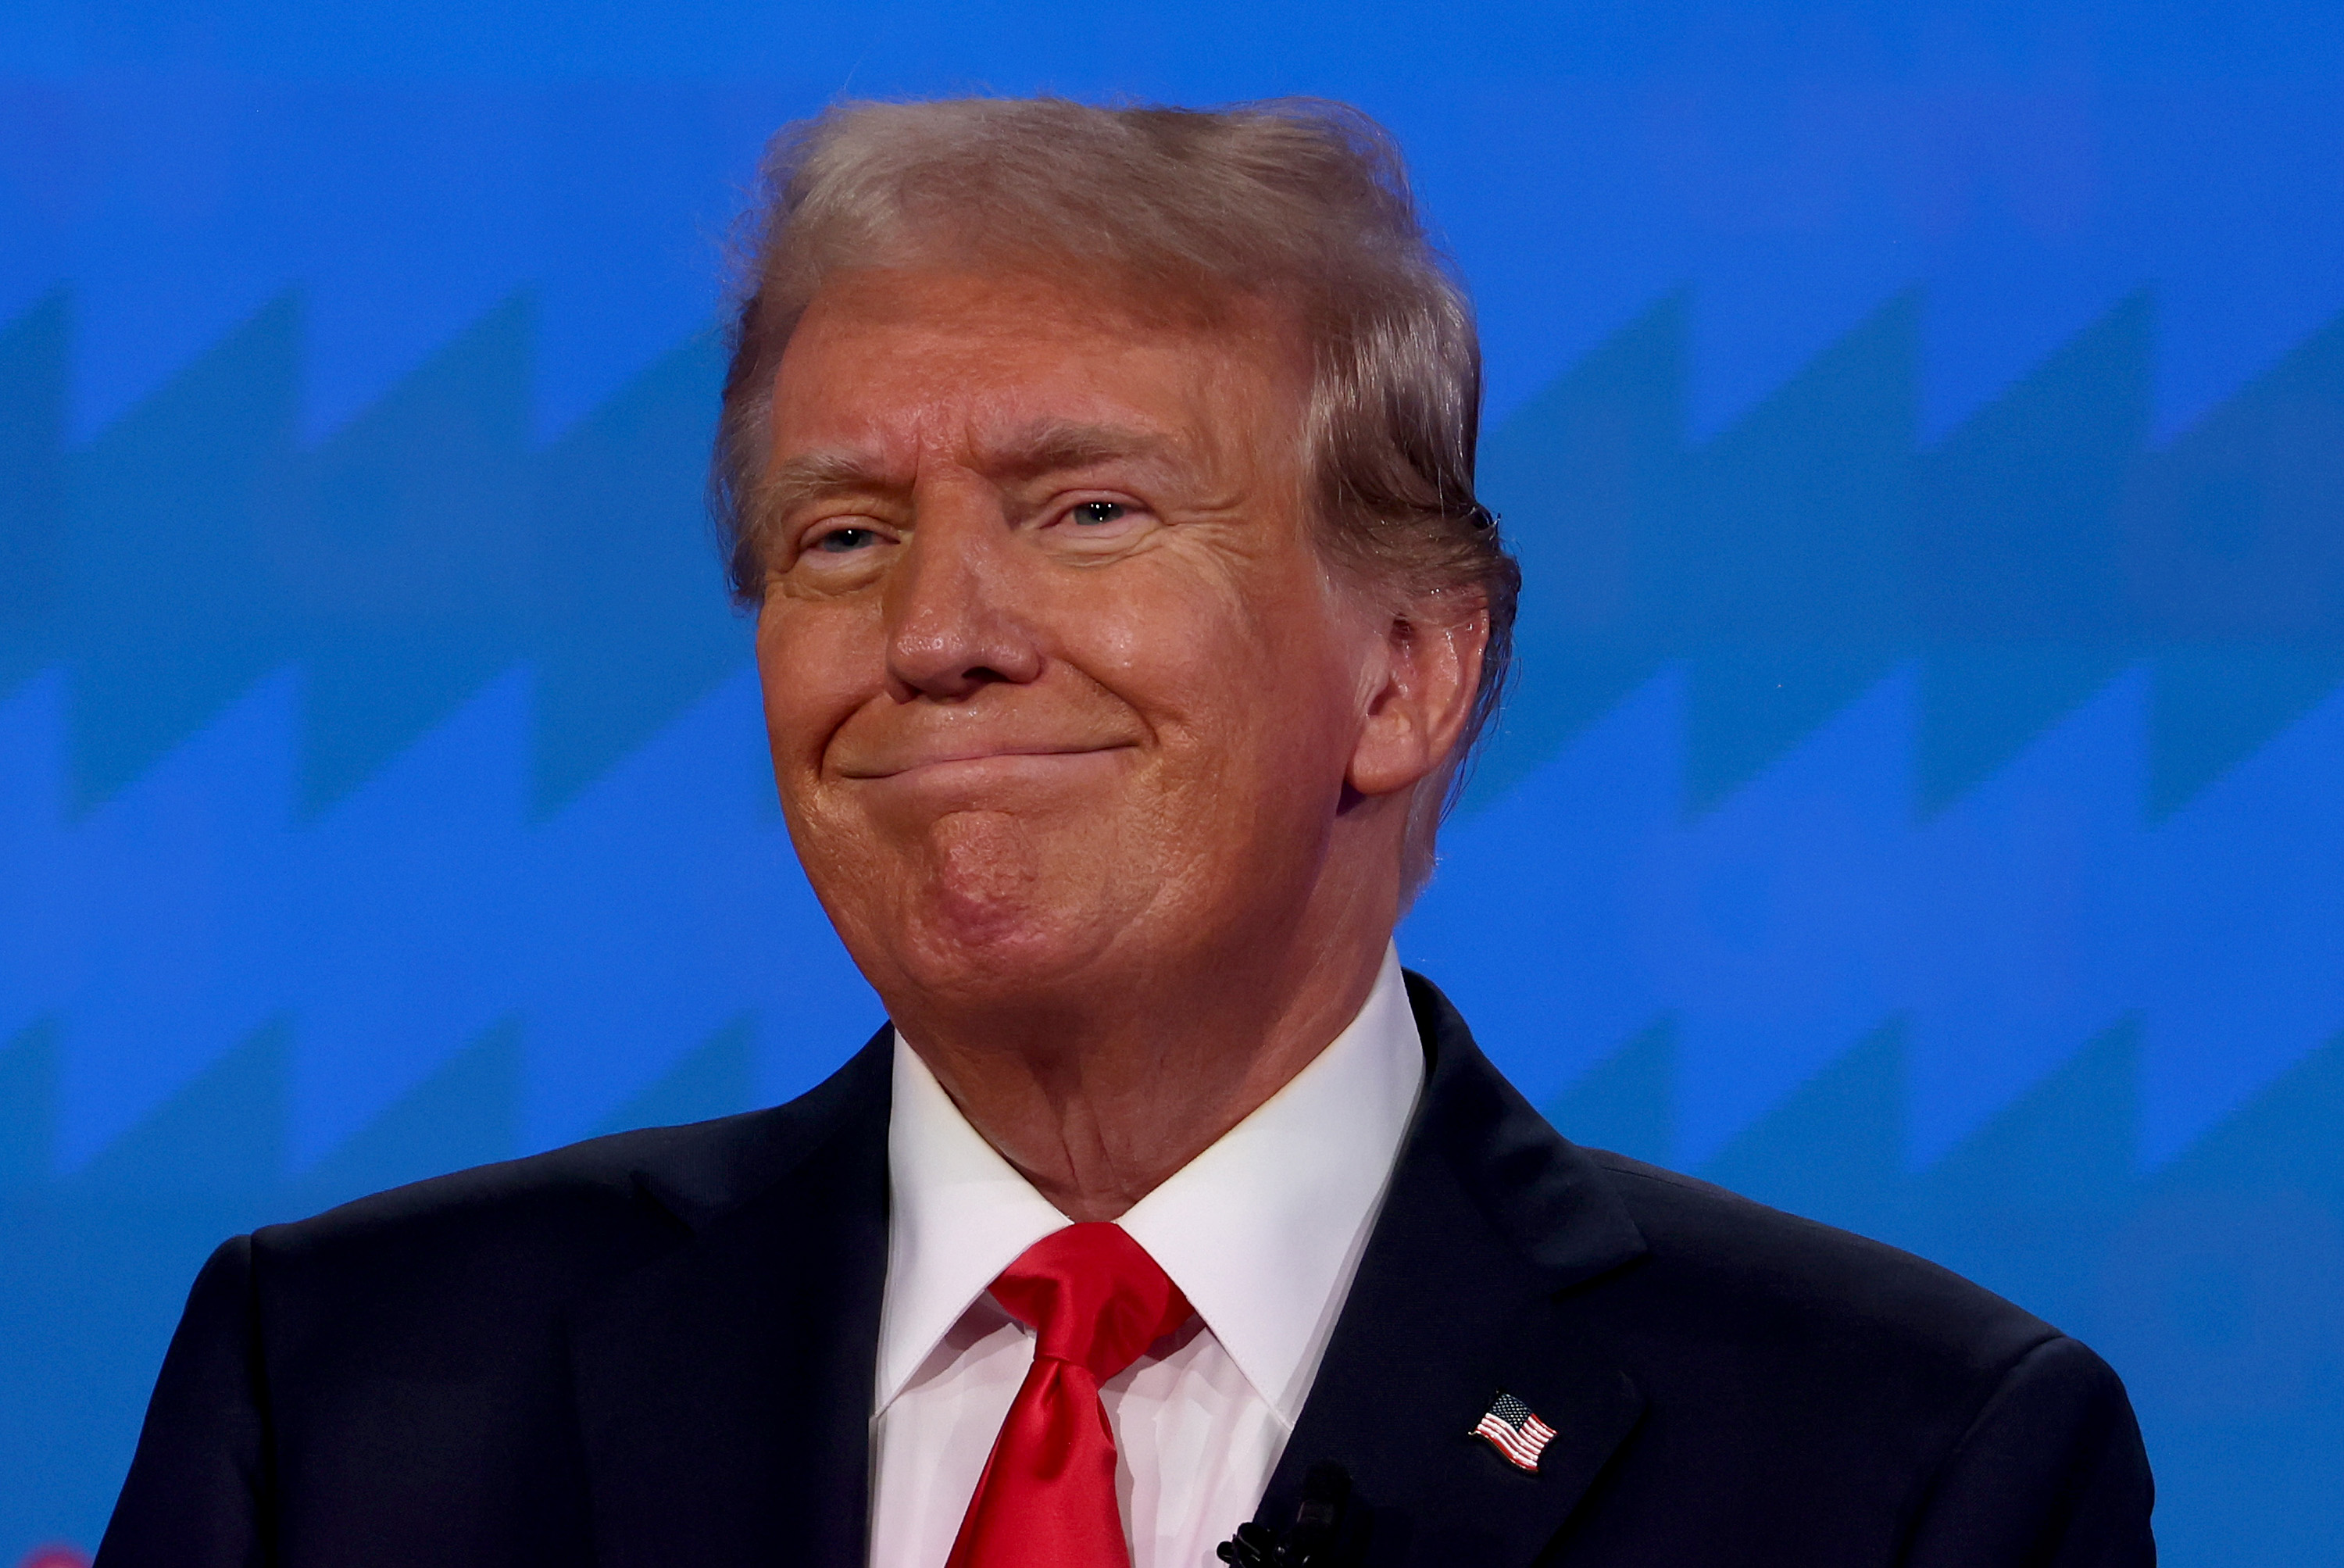 Donald Trump participates in a debate 